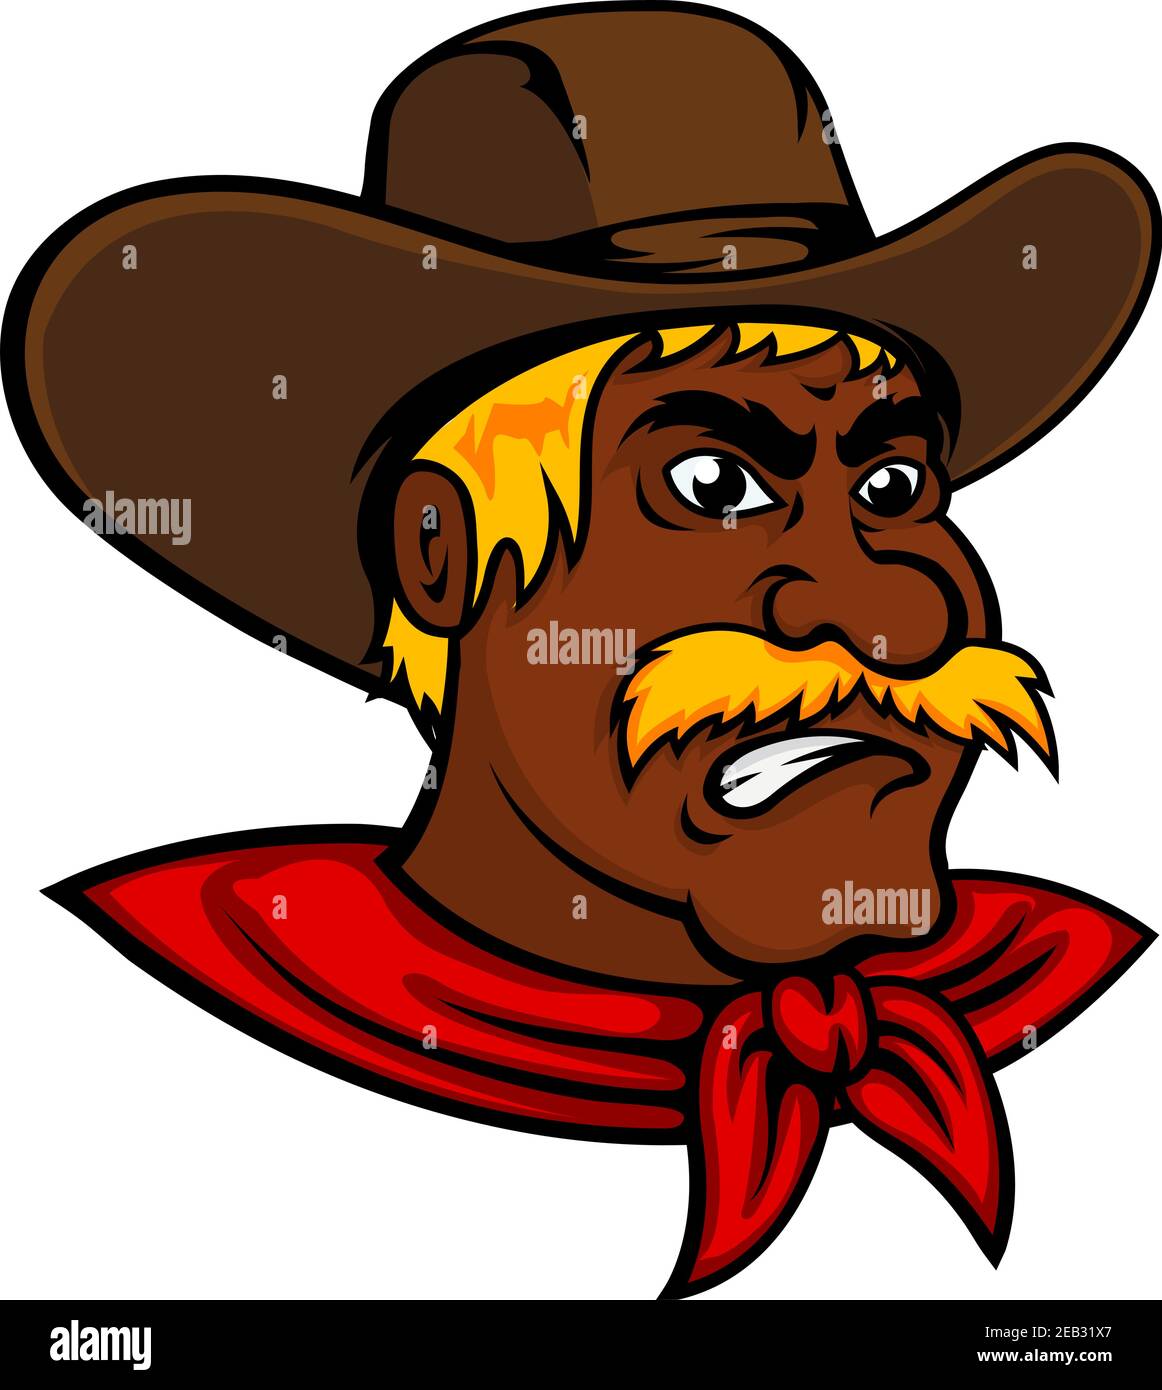 Coraggioso personaggio dei cowboy afroamericani con baffi lussureggianti e cappello in pelle marrone, per l'avventura selvaggia ovest o il design a tema agricolo Illustrazione Vettoriale